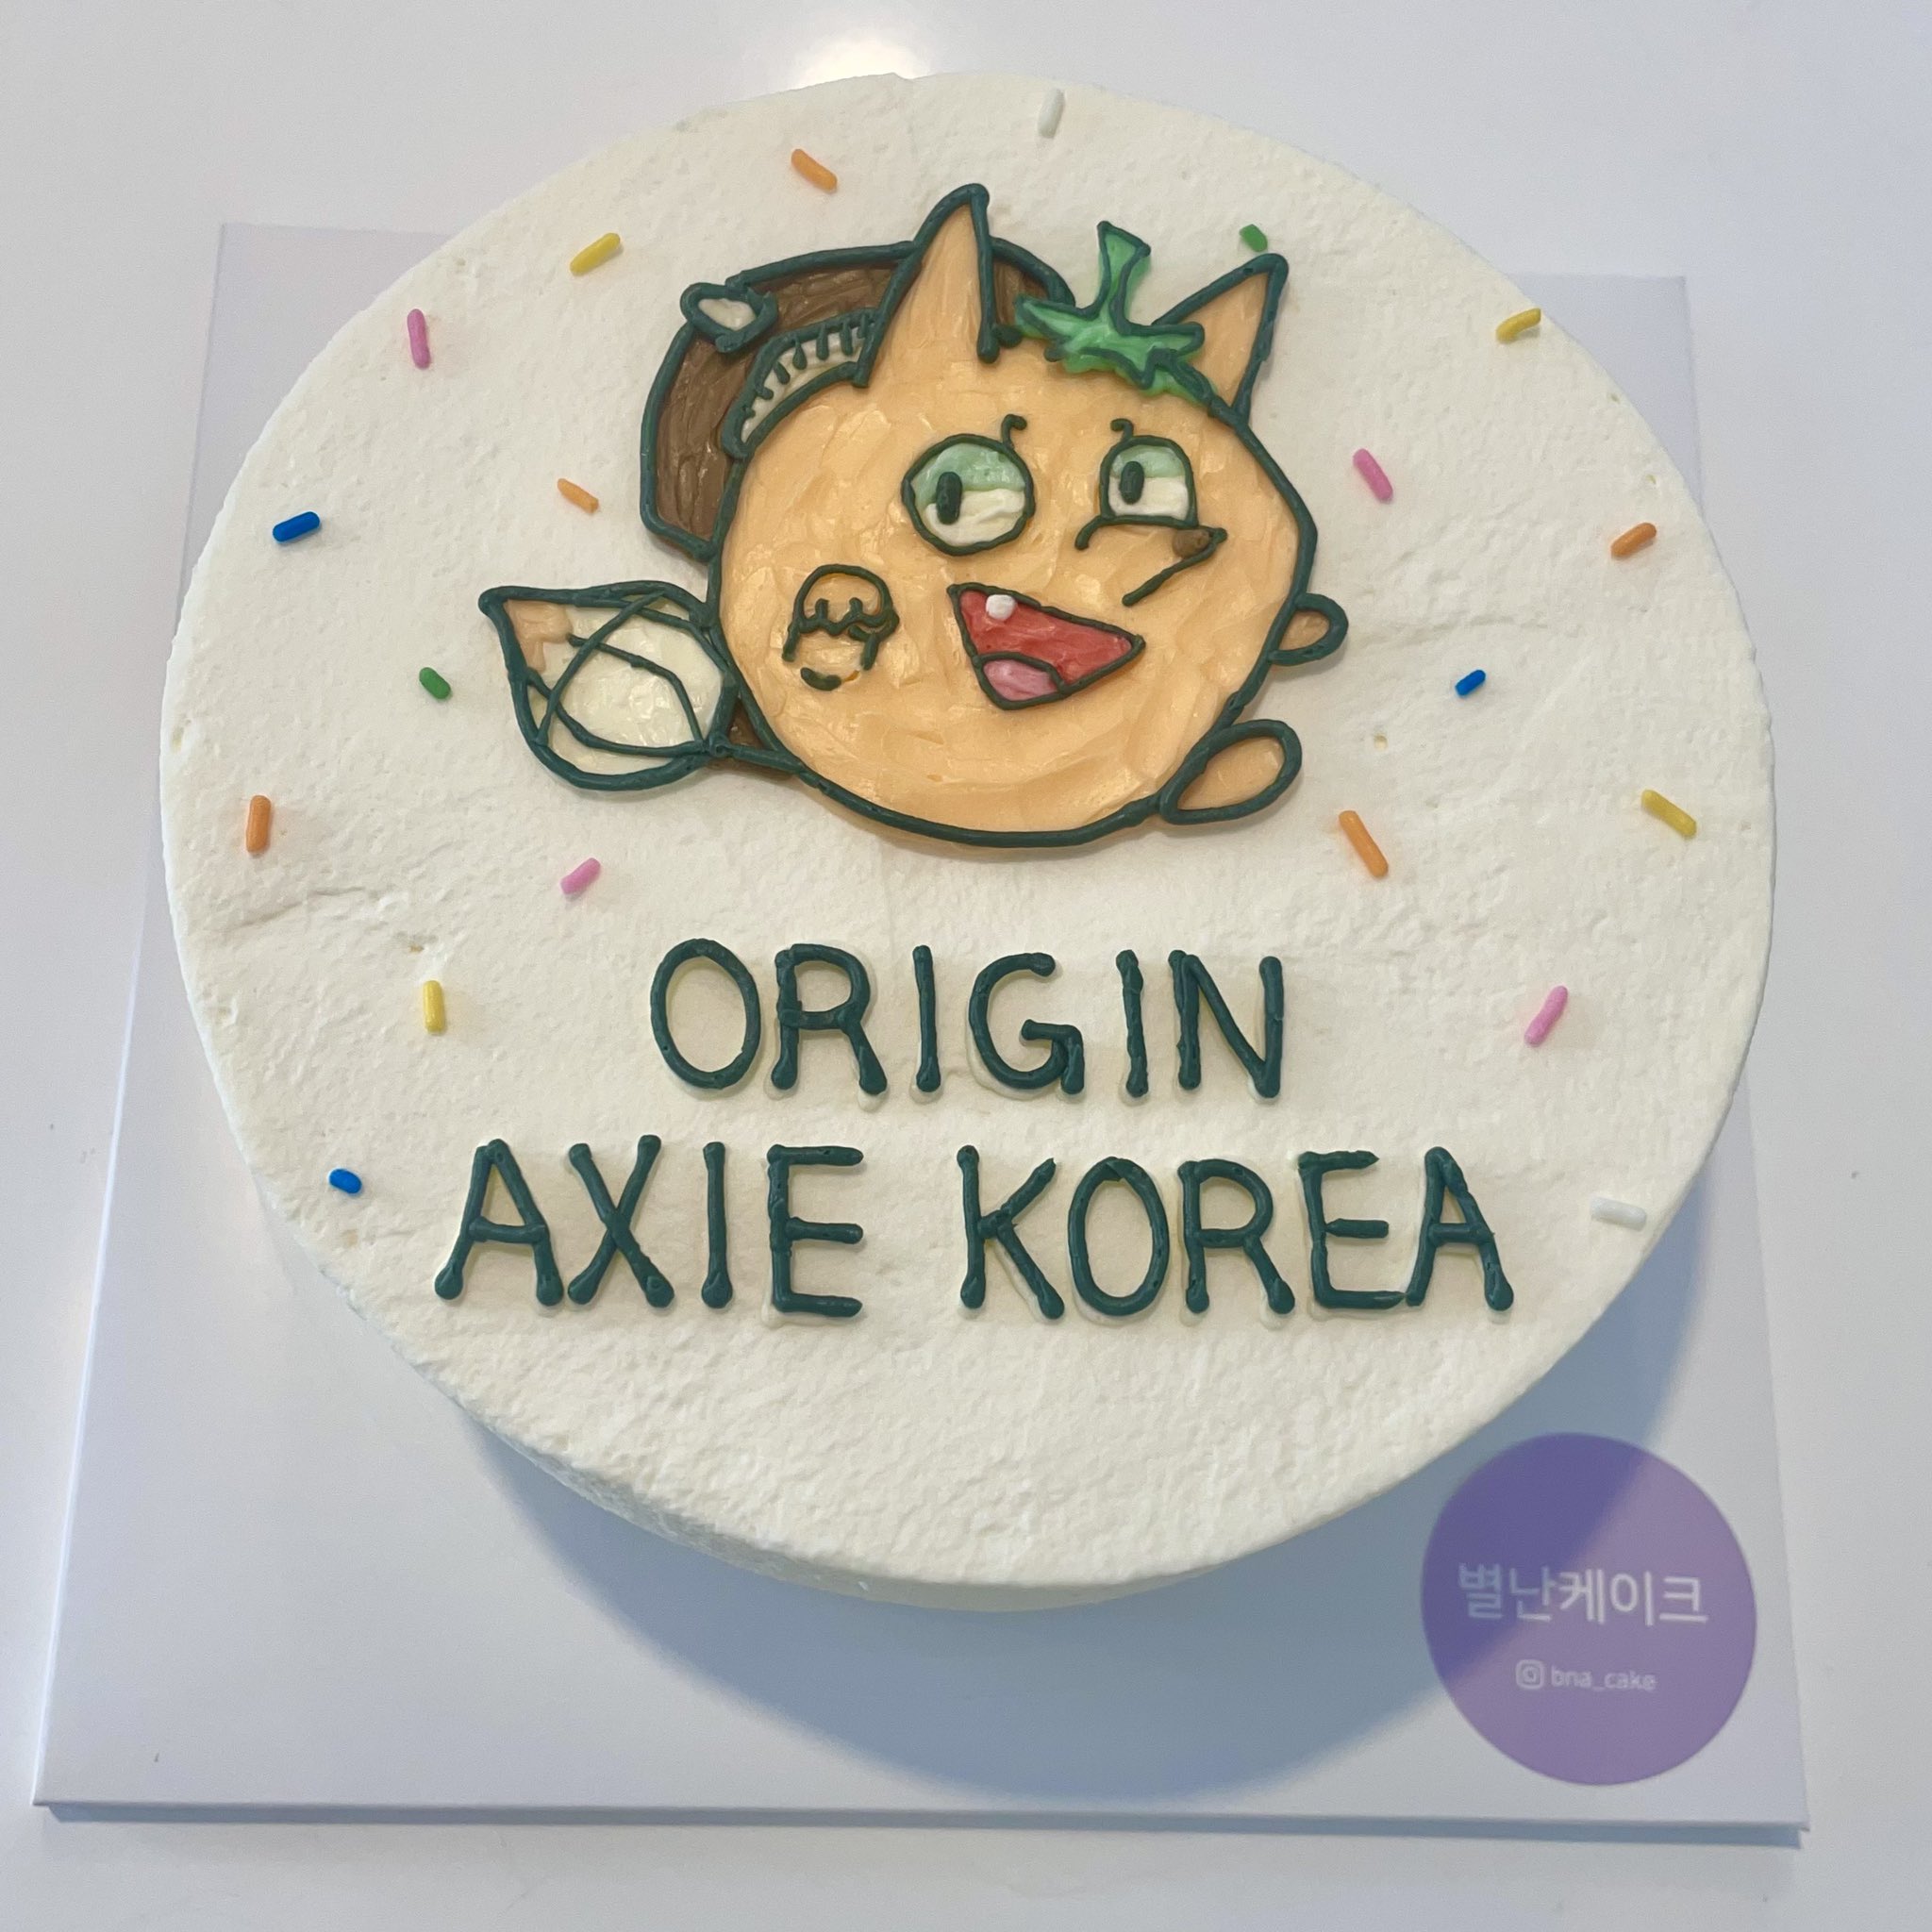 RT axiesisters: First Axie meetup in Korea💜 #axiekorea #axiecake #axieinfinity [twitter.com] [pbs.twimg.com]